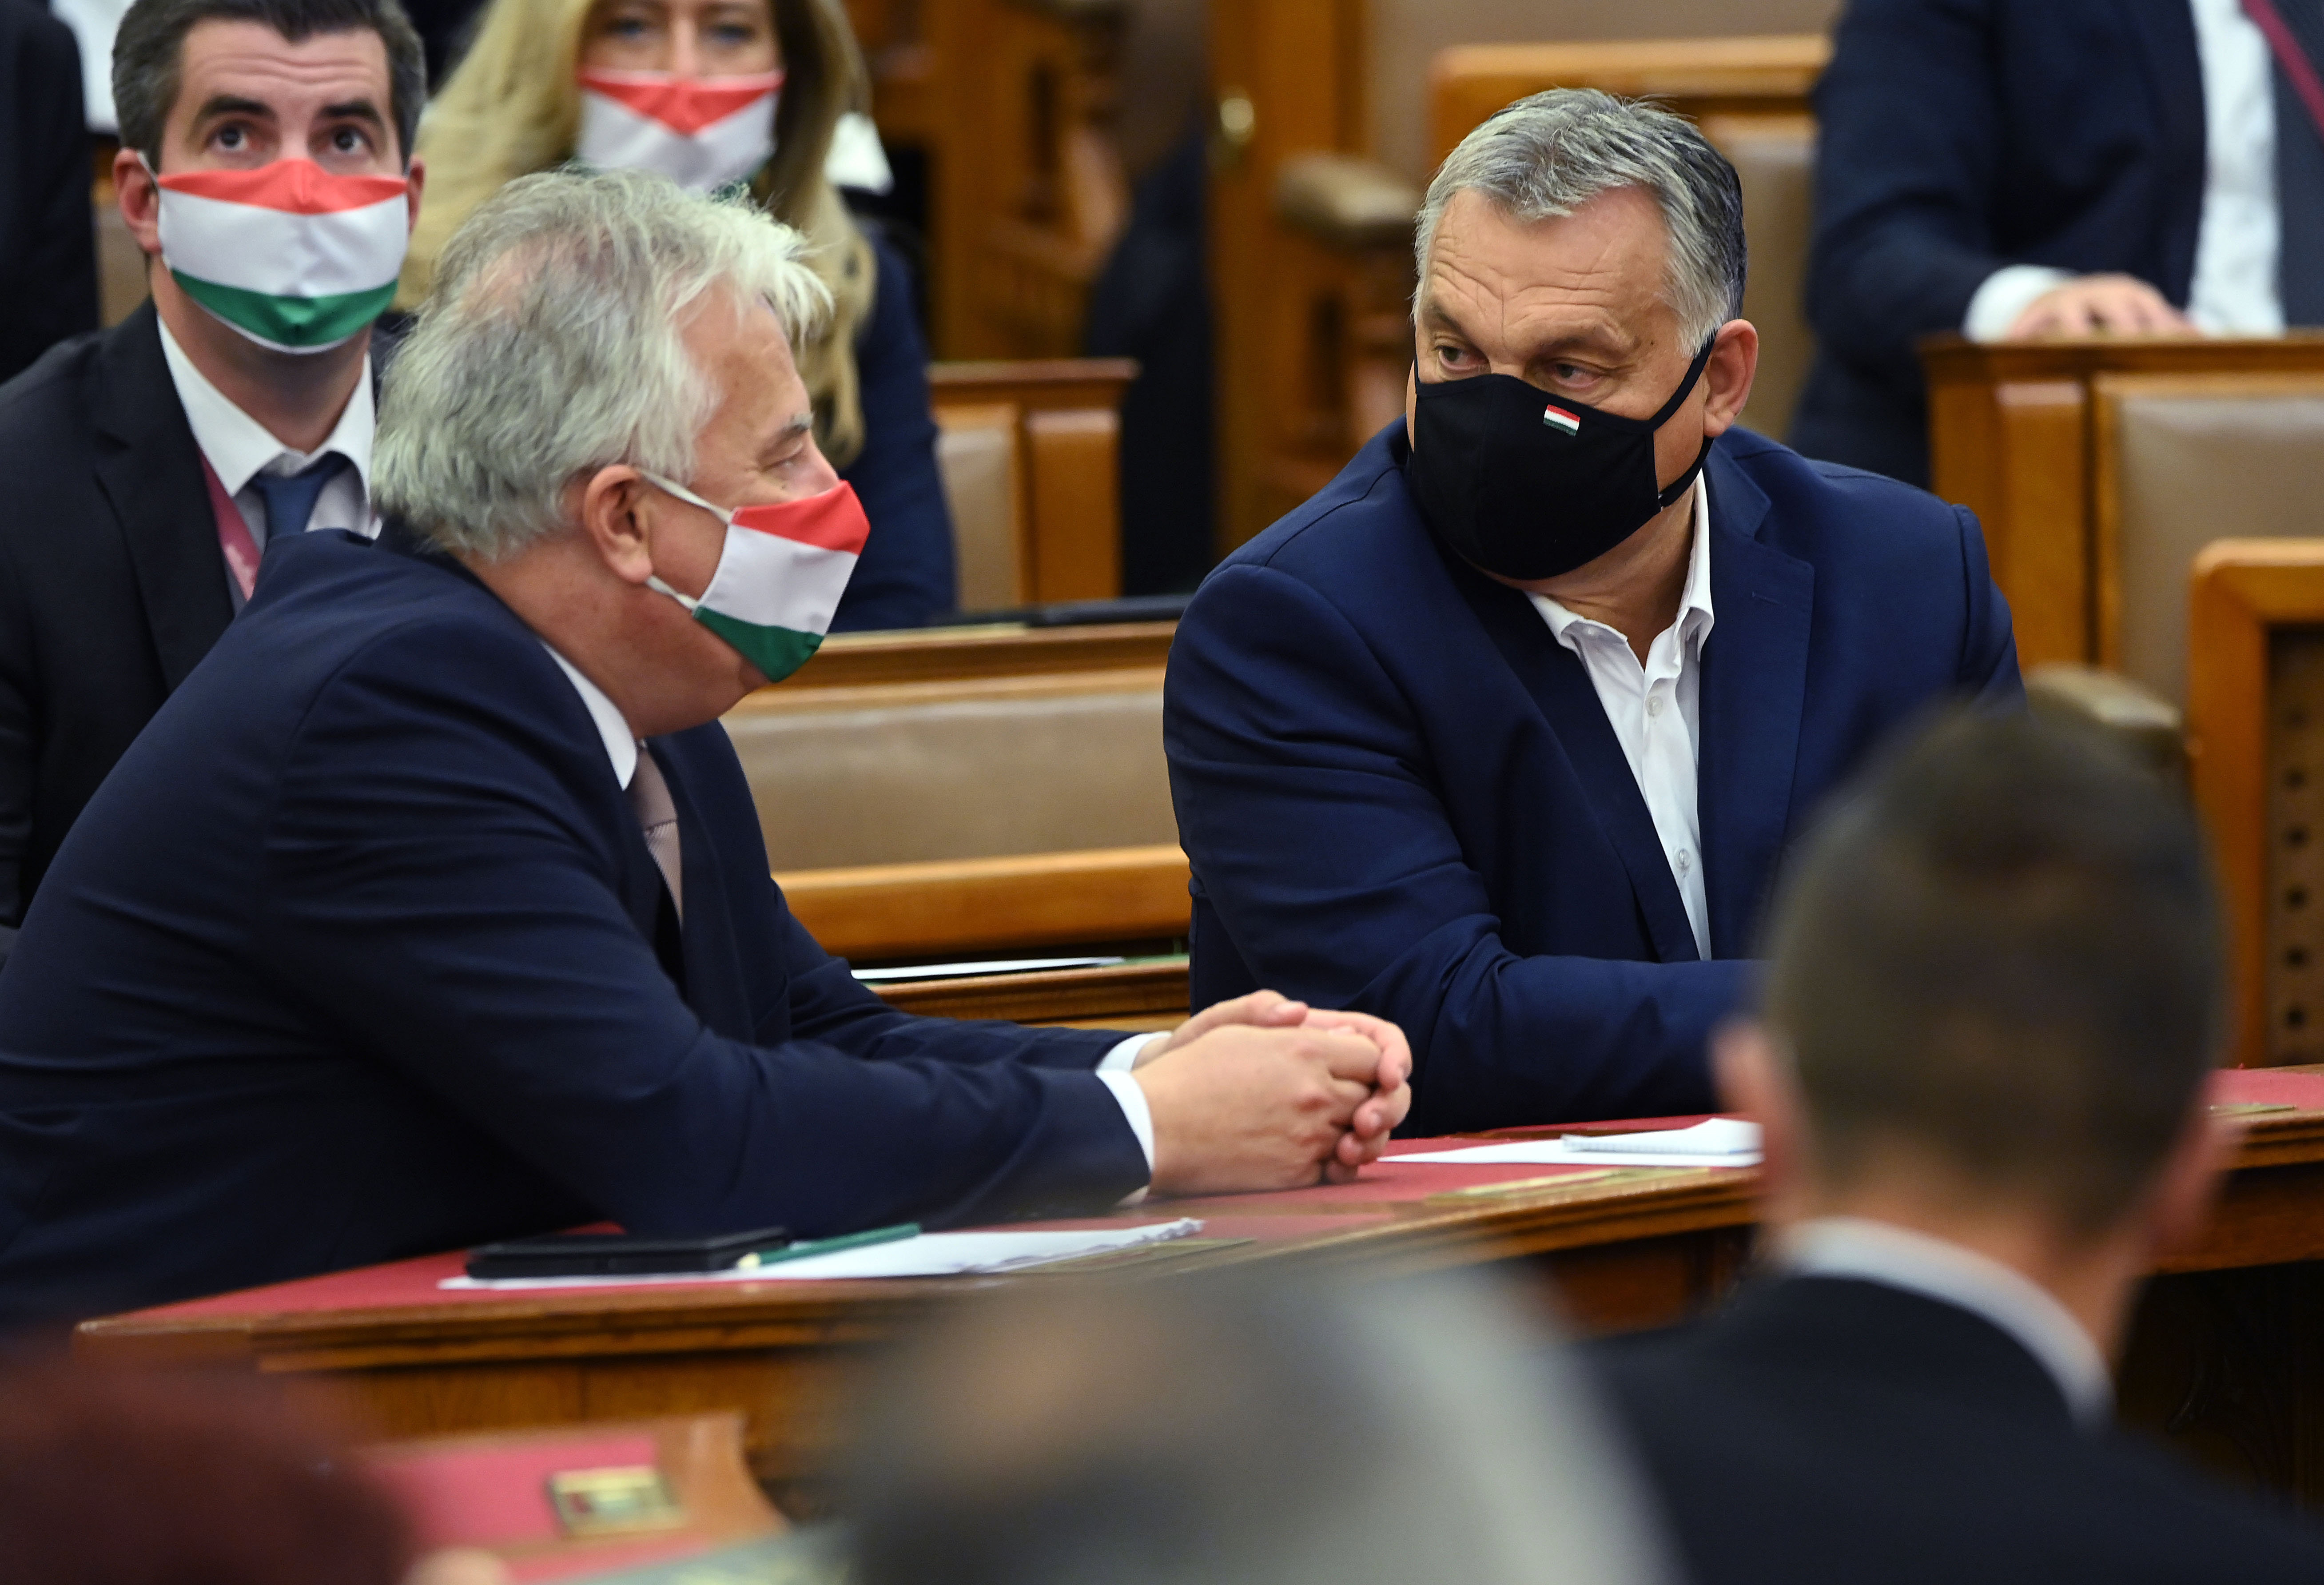 Fideszes politikusok is zúgolódnak, hogy túl enyhék a járványügyi intézkedések